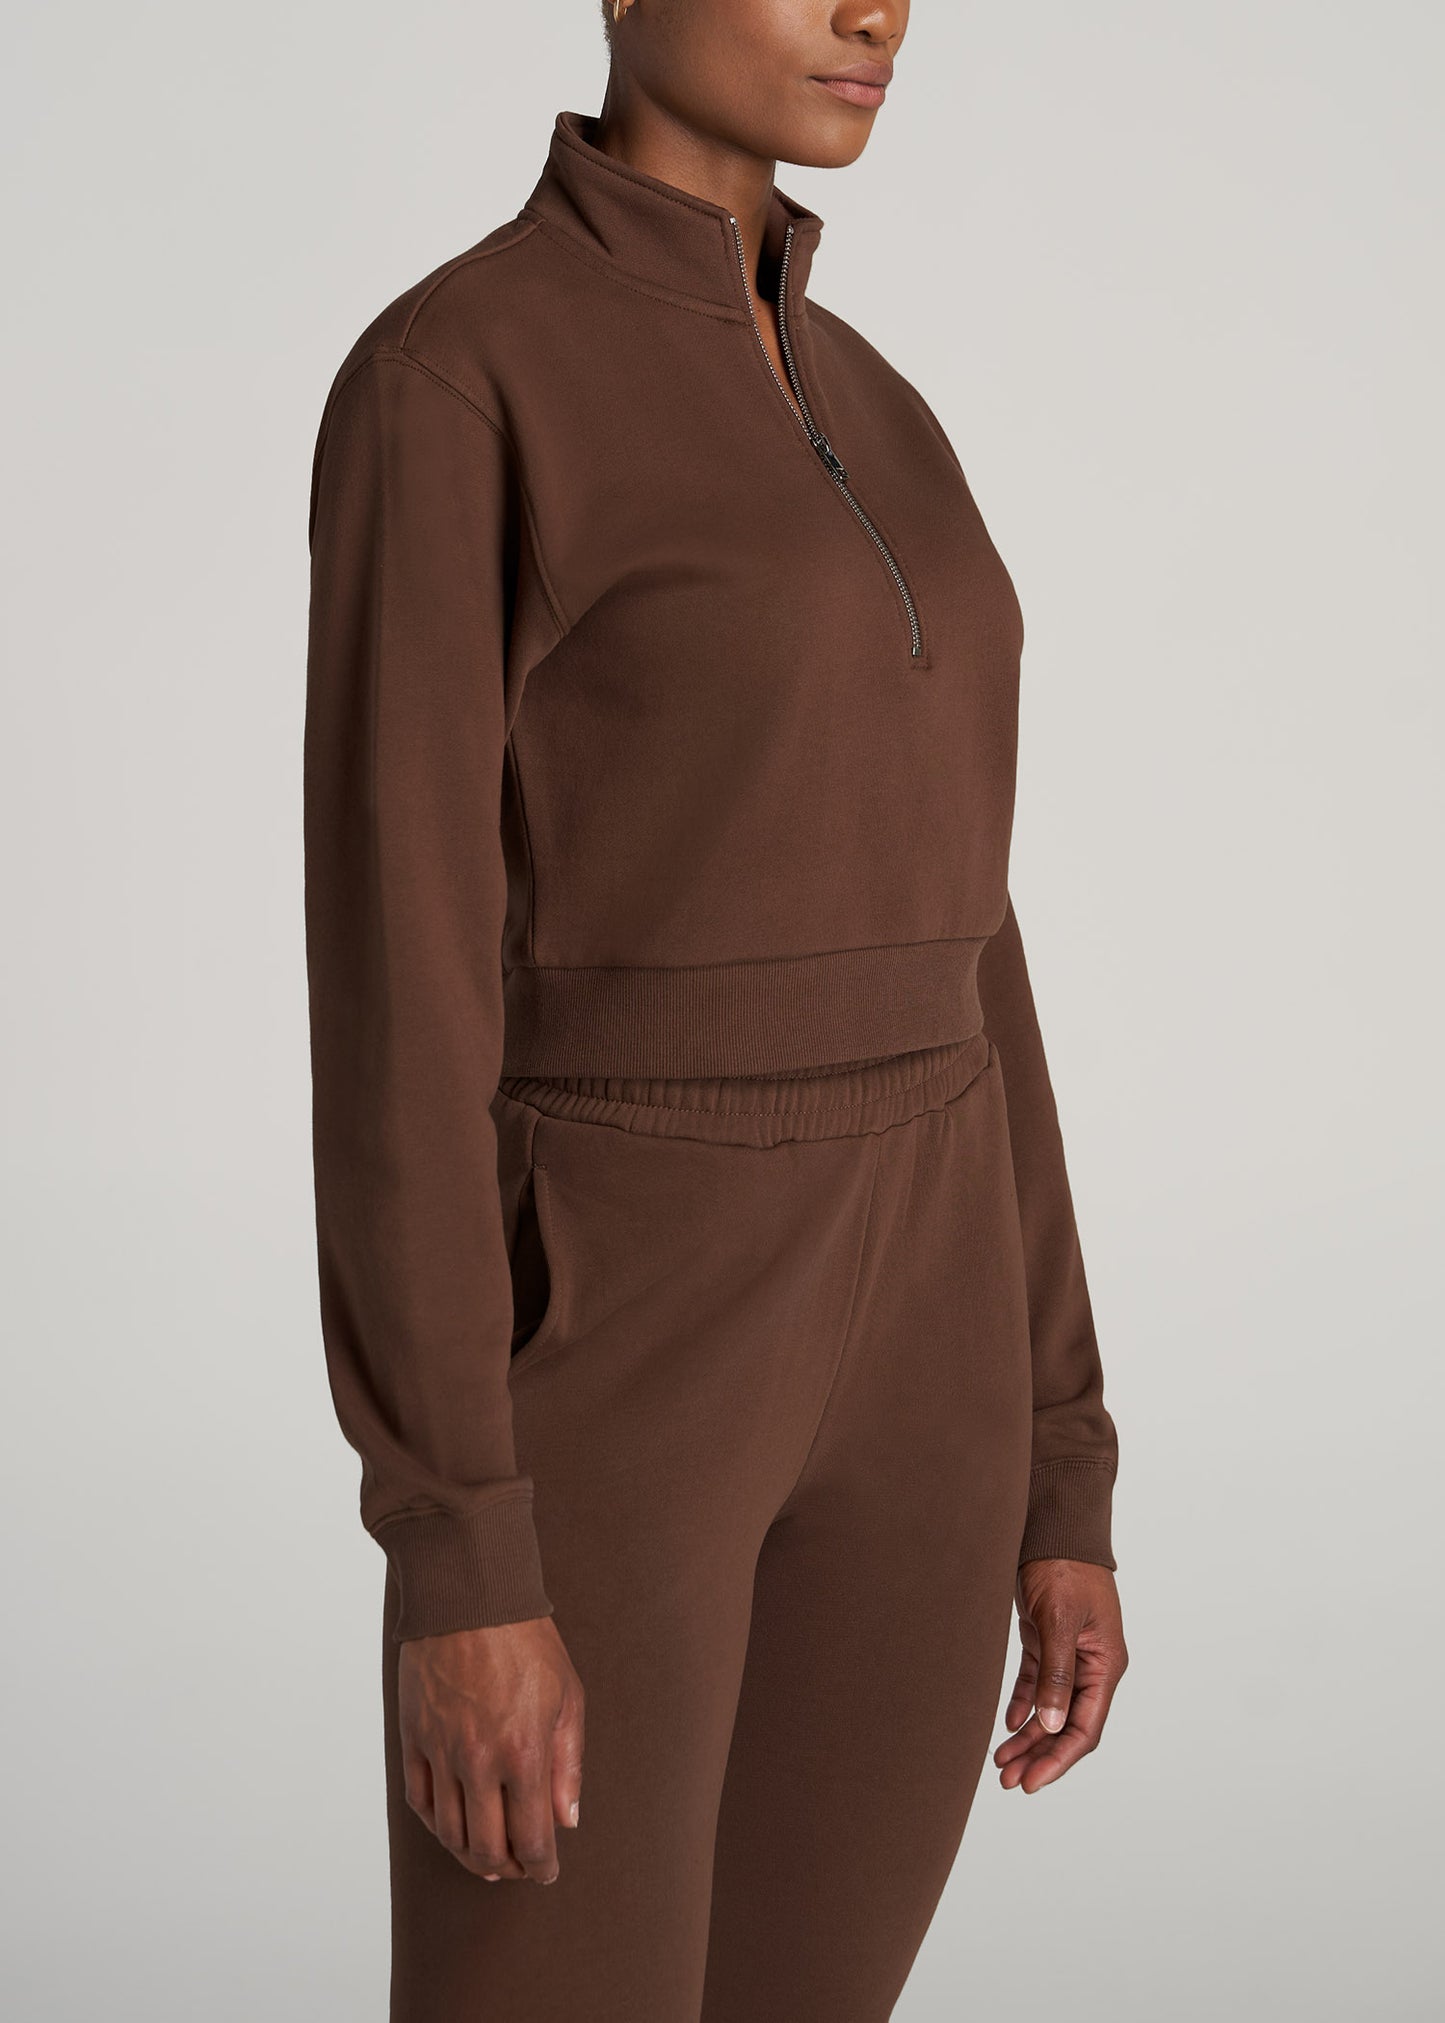    American-Tall-Women-WKND-Cropped-HalfZip-Sweatshirt-Rootbeer-side